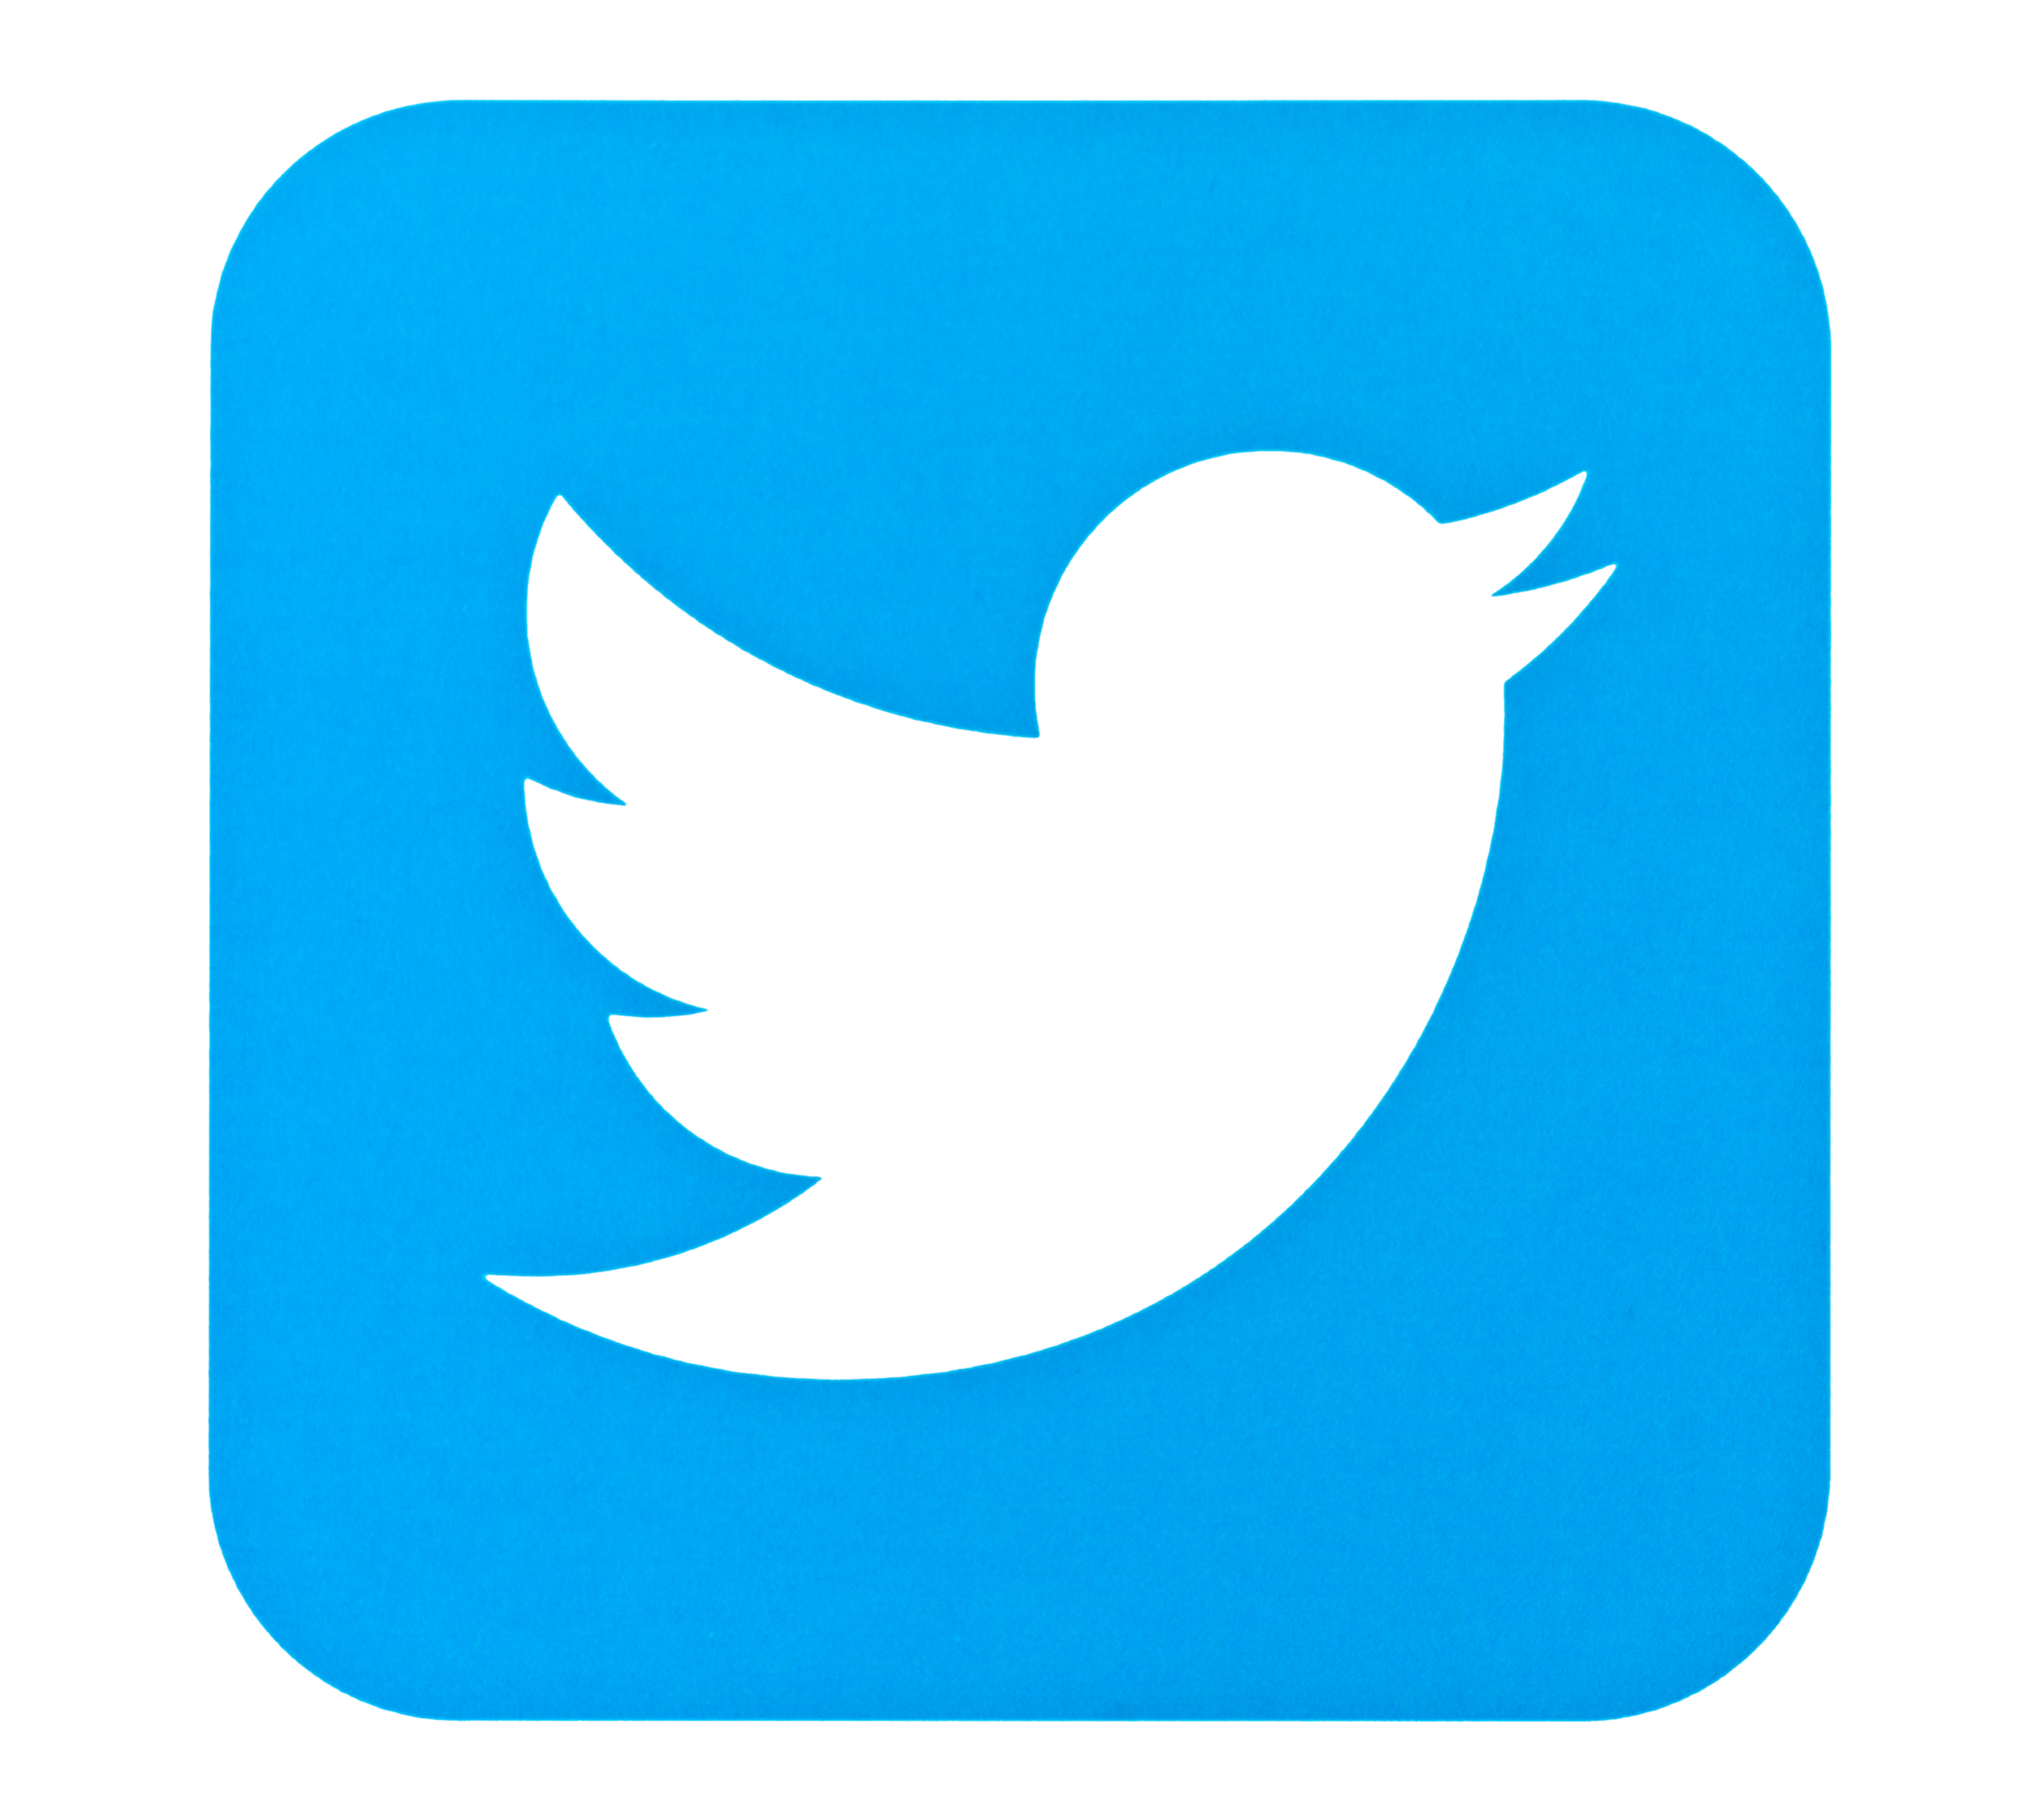 Auf der Plattform Twitter findet in 280 Zeichen fachlicher und unterhaltsamer Austausch statt.  